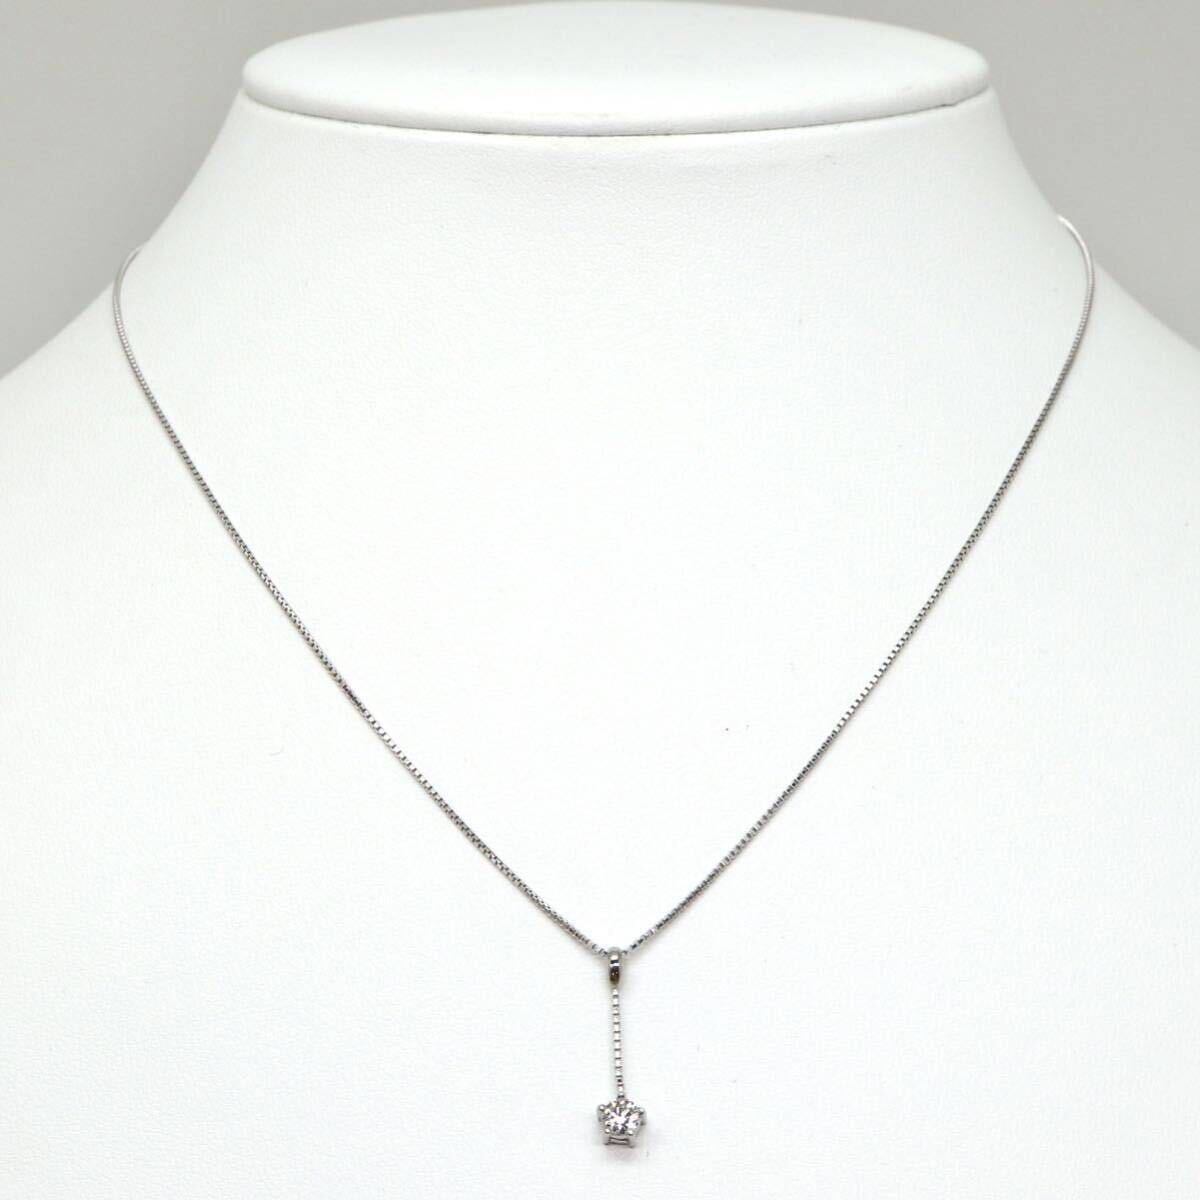  прекрасный товар!!*Pt950/Pt850 натуральный бриллиантовое колье *M примерно 2.8g примерно 40.0cm diamond necklace jewelry ювелирные изделия EA6/EB1